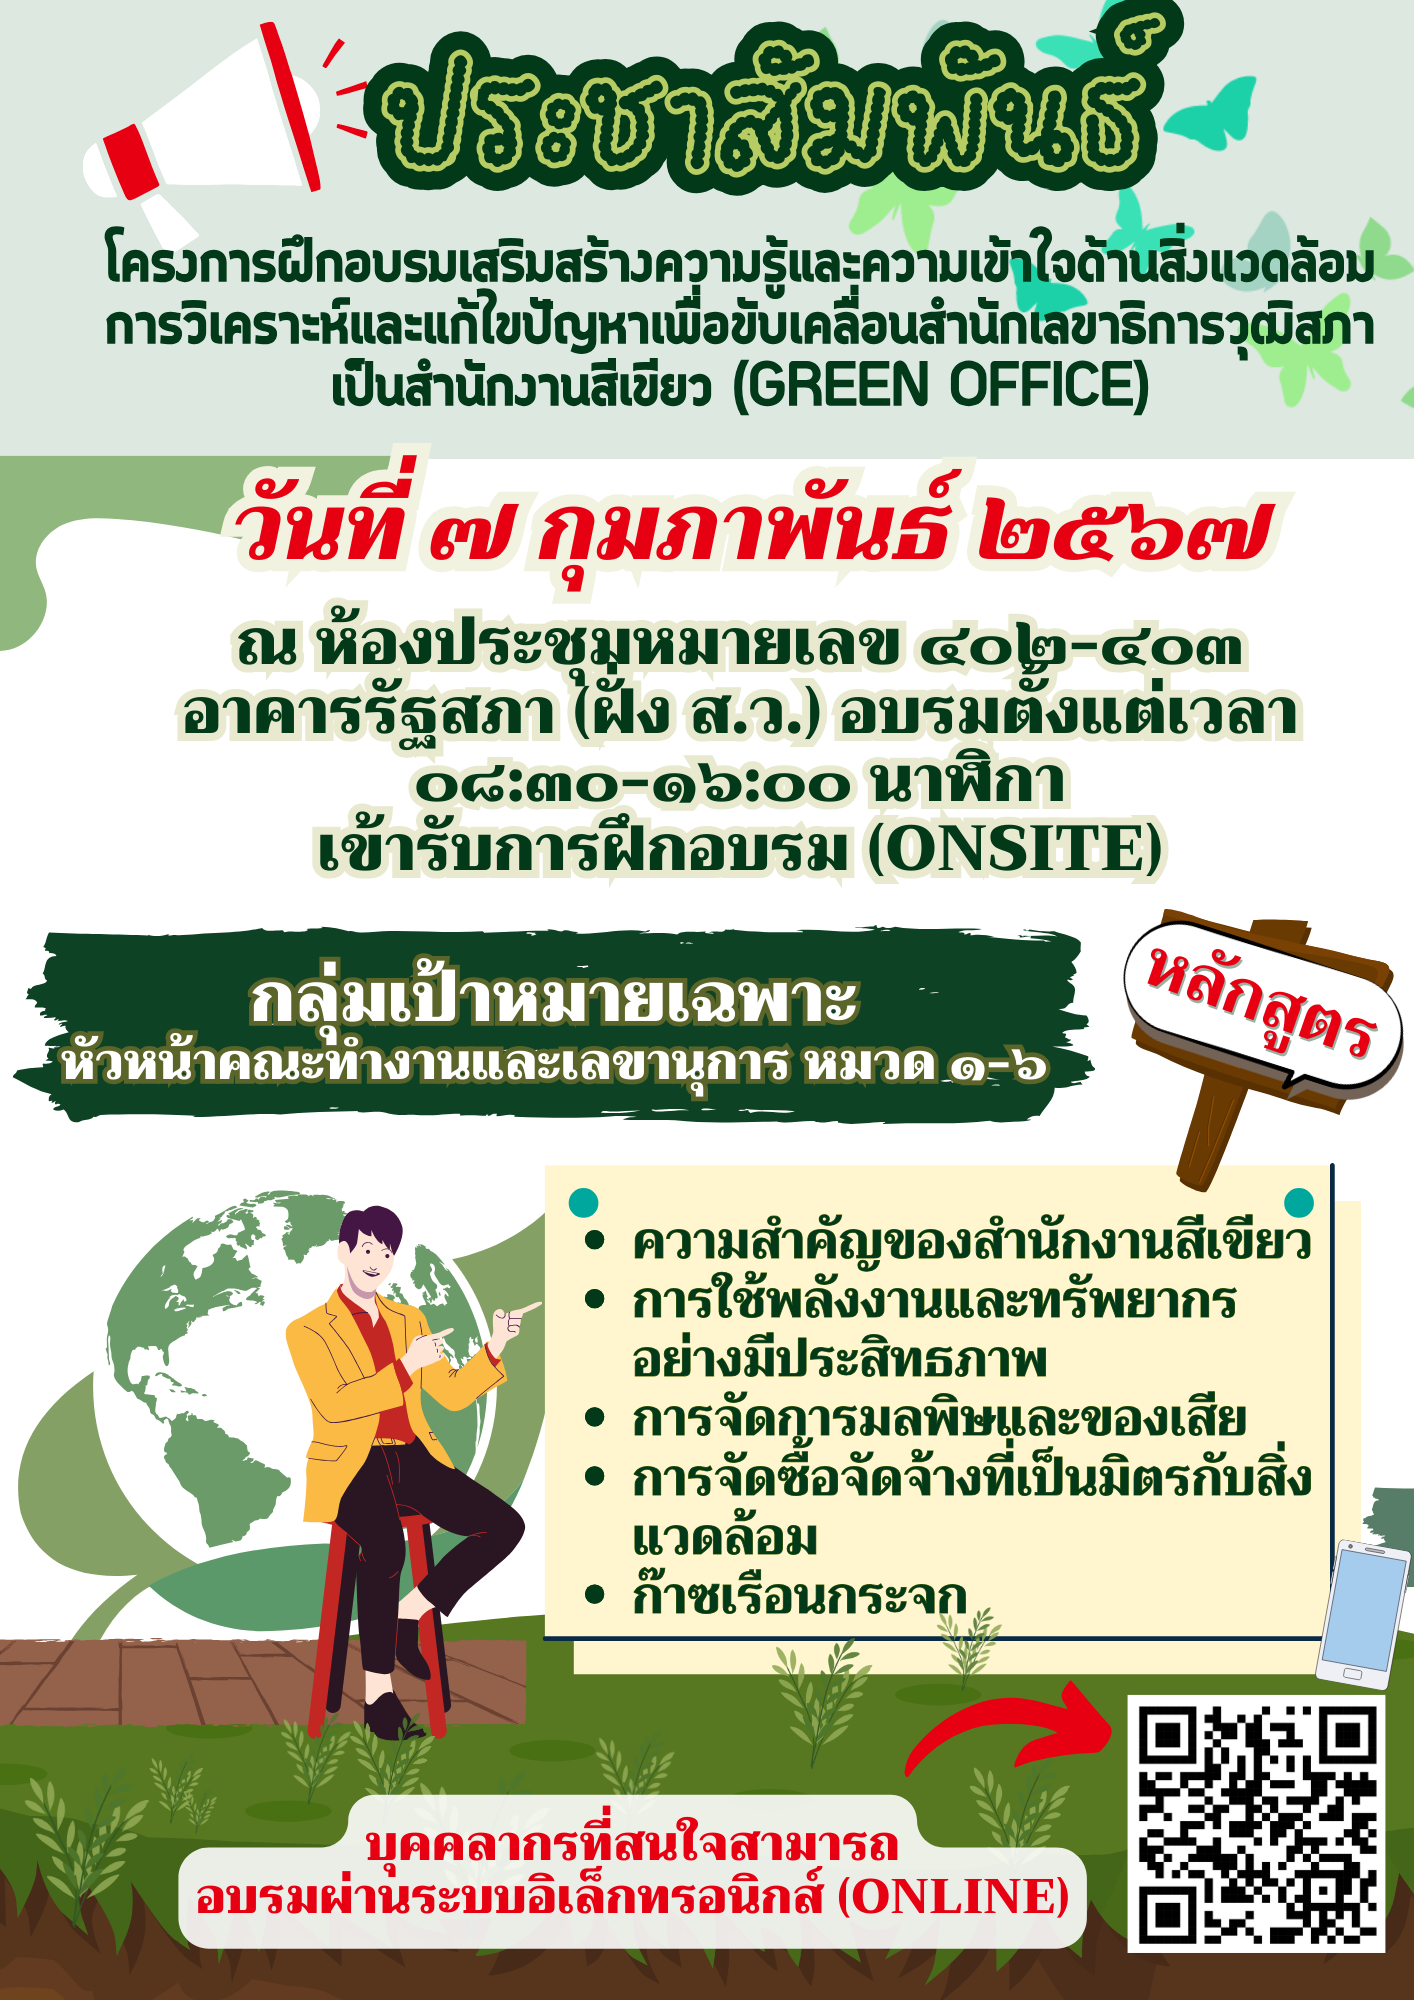 การวิเคราะห์และแก้ไขปัญหาเพื่อขับเคลื่อนสำนักงานเลขาธิการวุฒิสภาเป็นสำนักงานสีเขียว Green Office